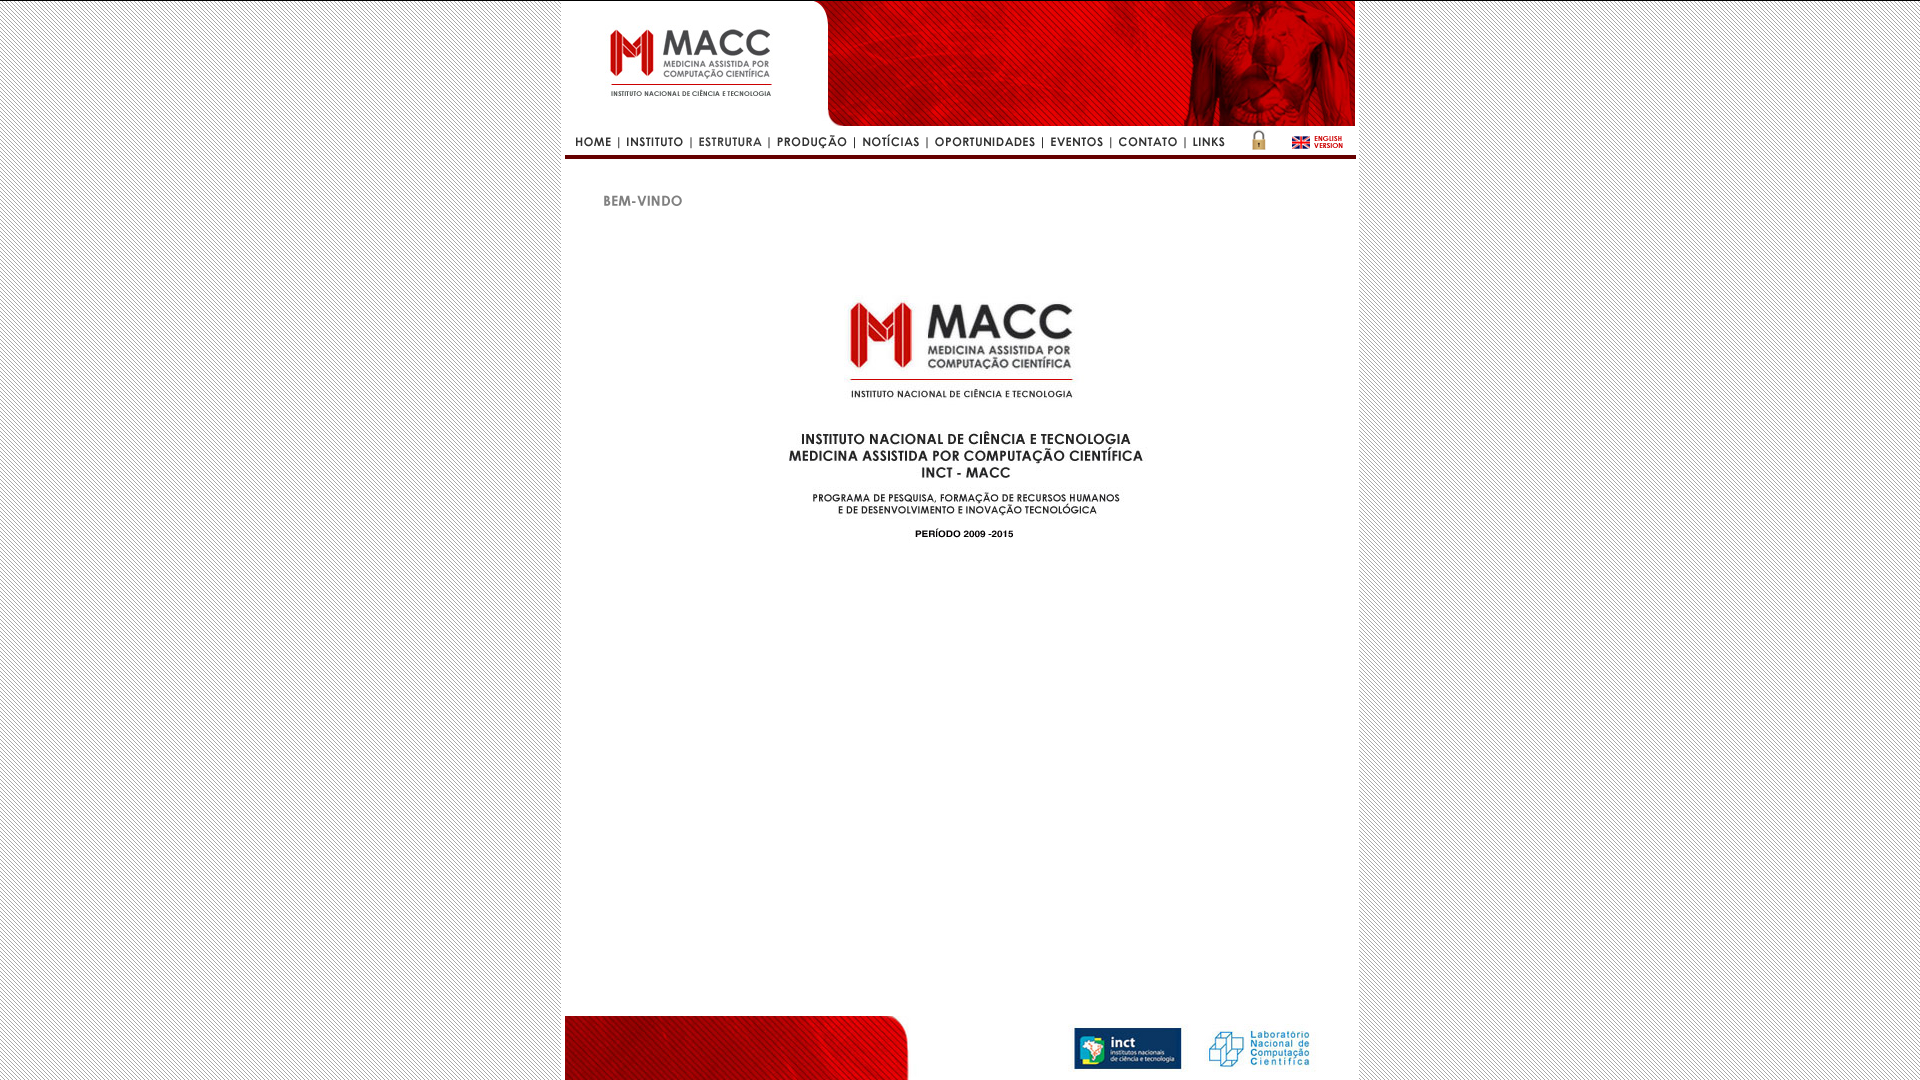 MACC - Medicina Assistida por Computação Científica